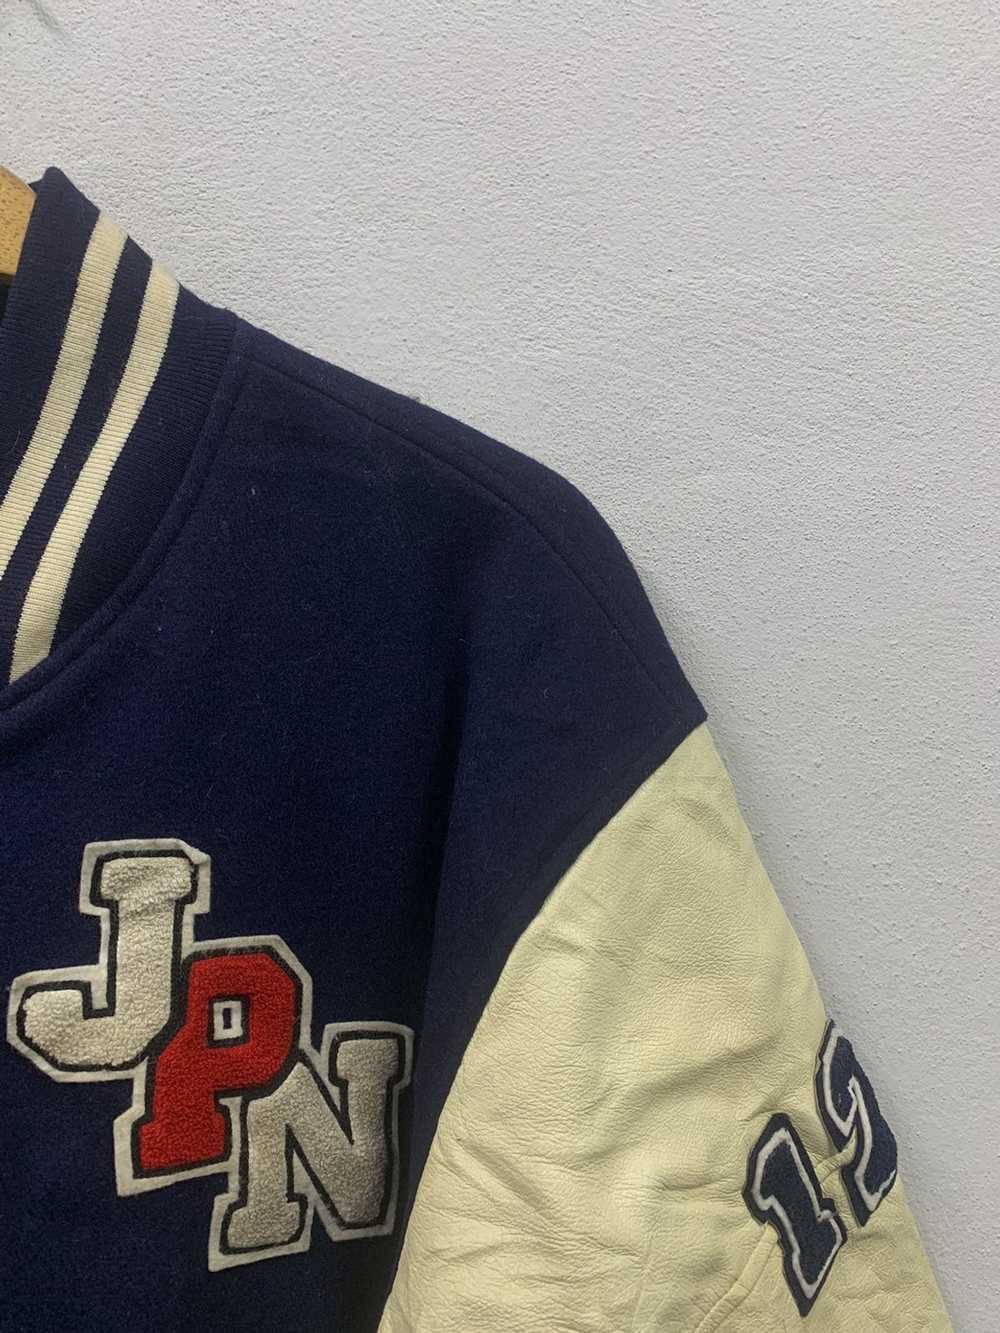 Hockey × Leather Jacket × Varsity Jacket Vintage … - image 6